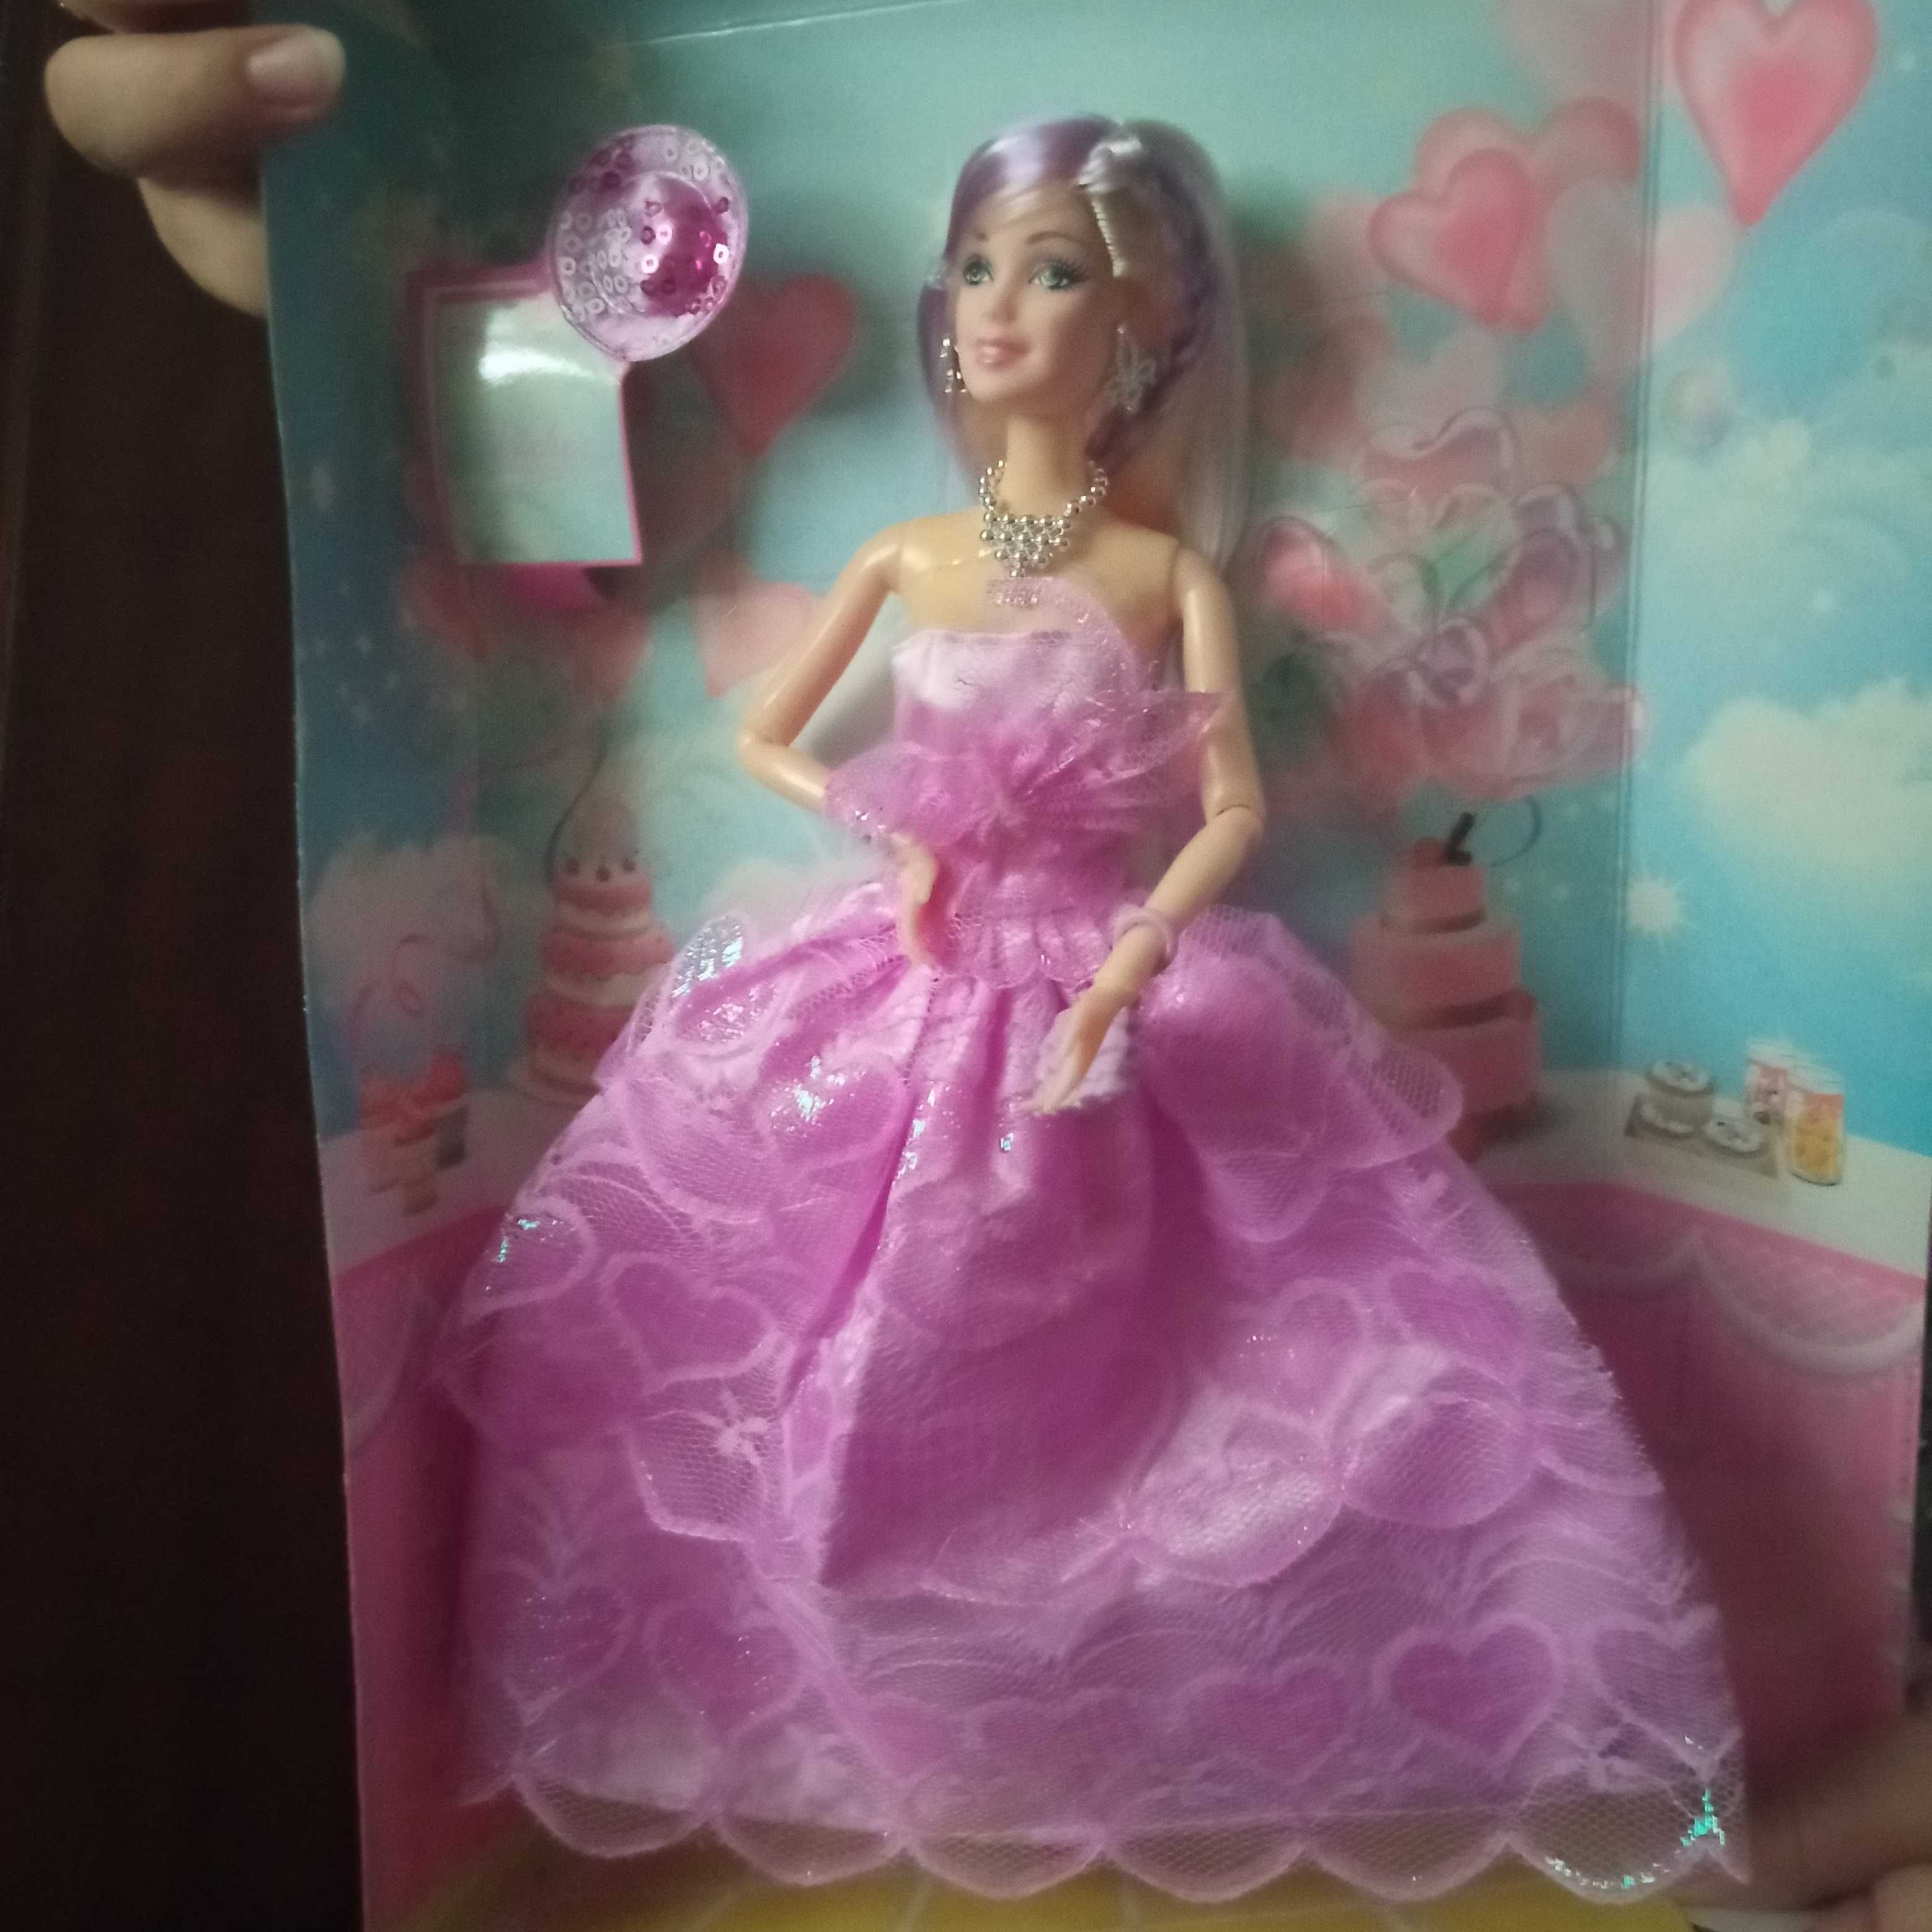 продается новая кукла барби вупаковке